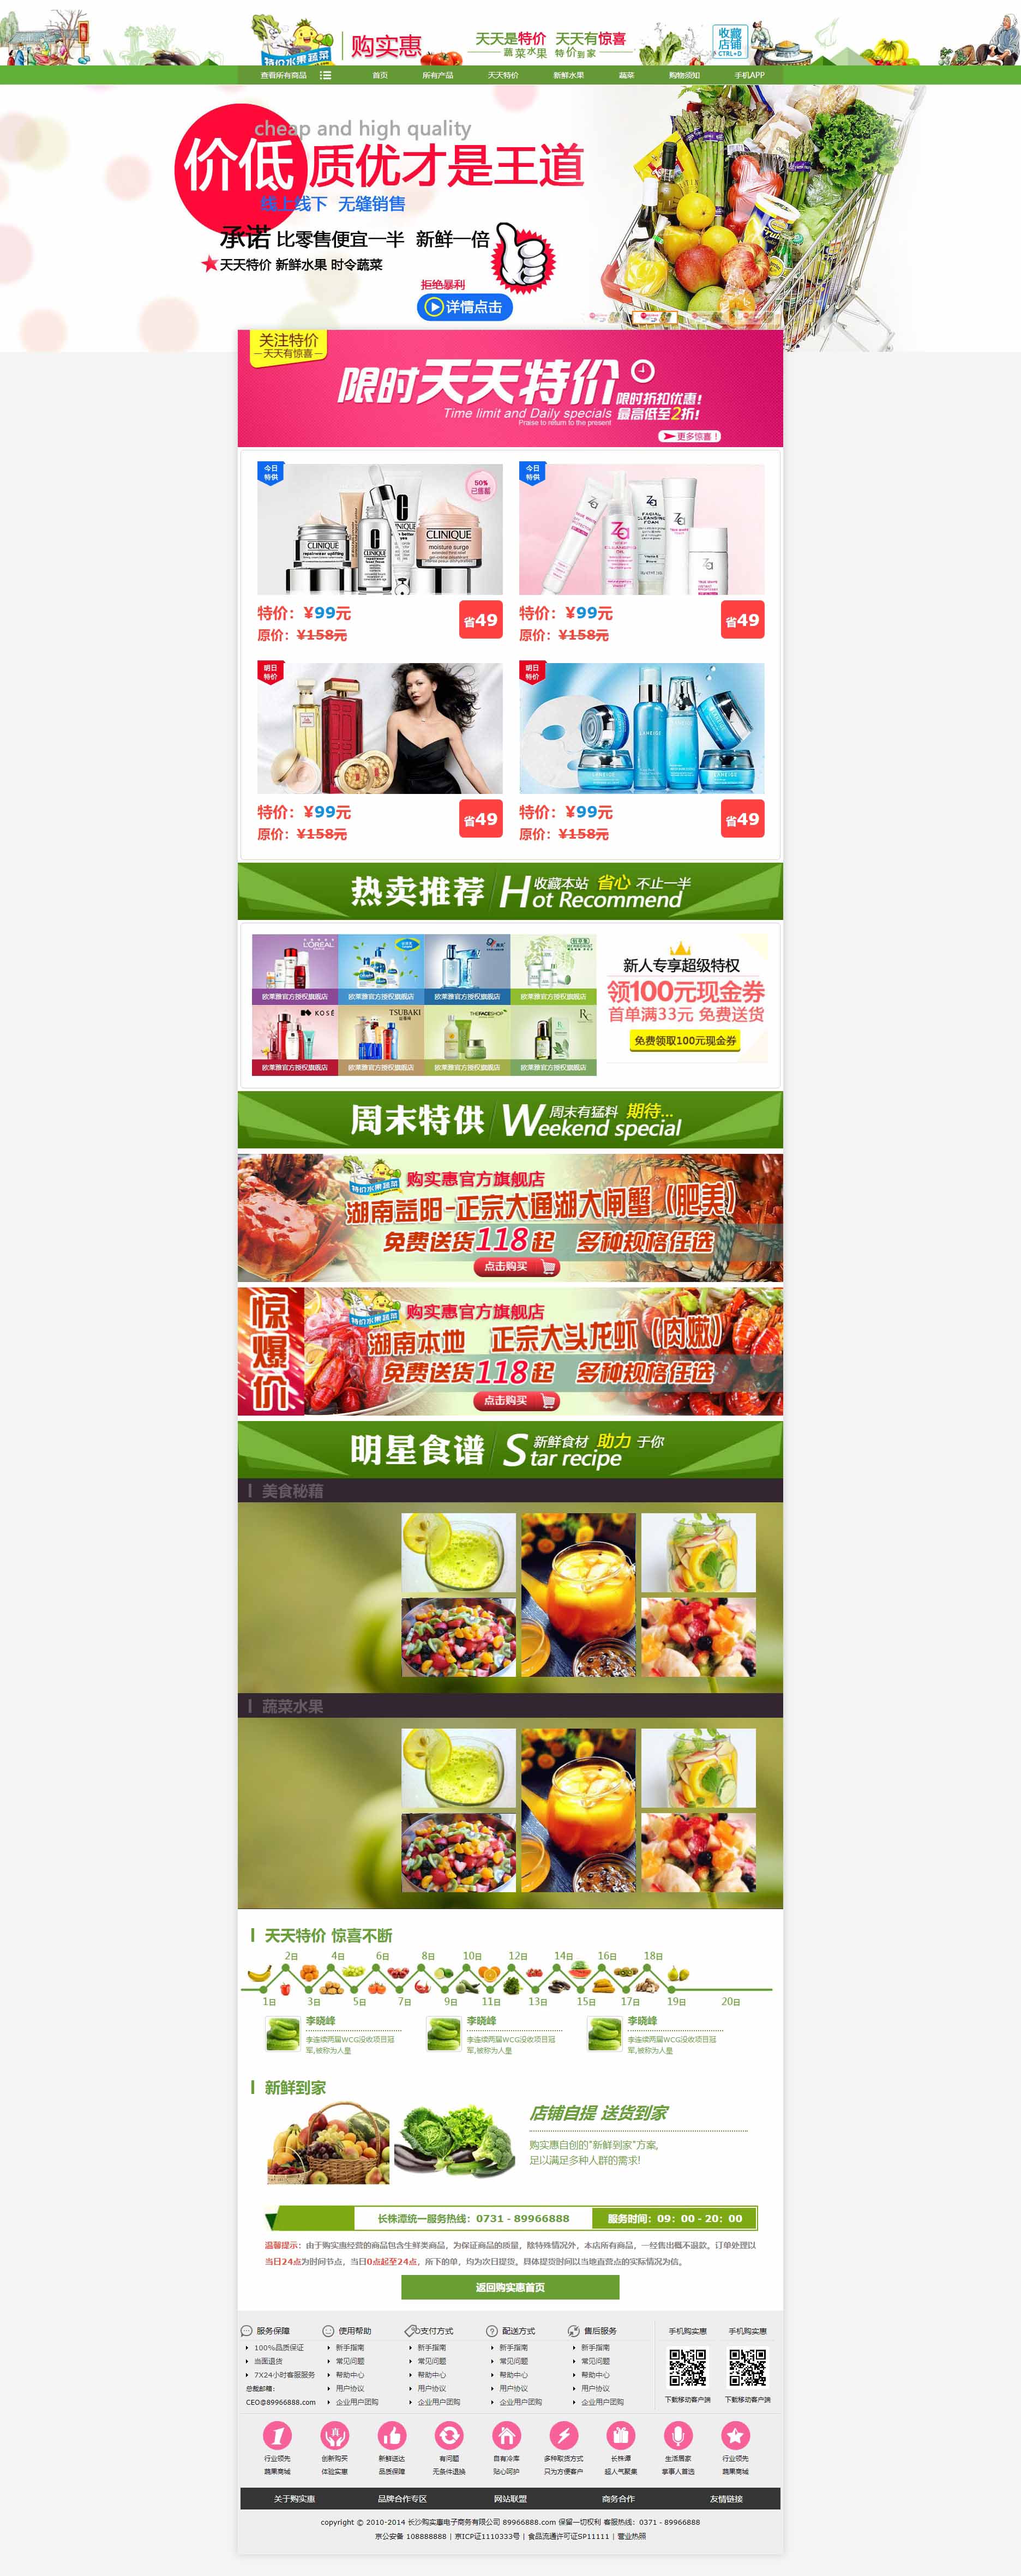 绿色的网上蔬菜商城网站模板html下载